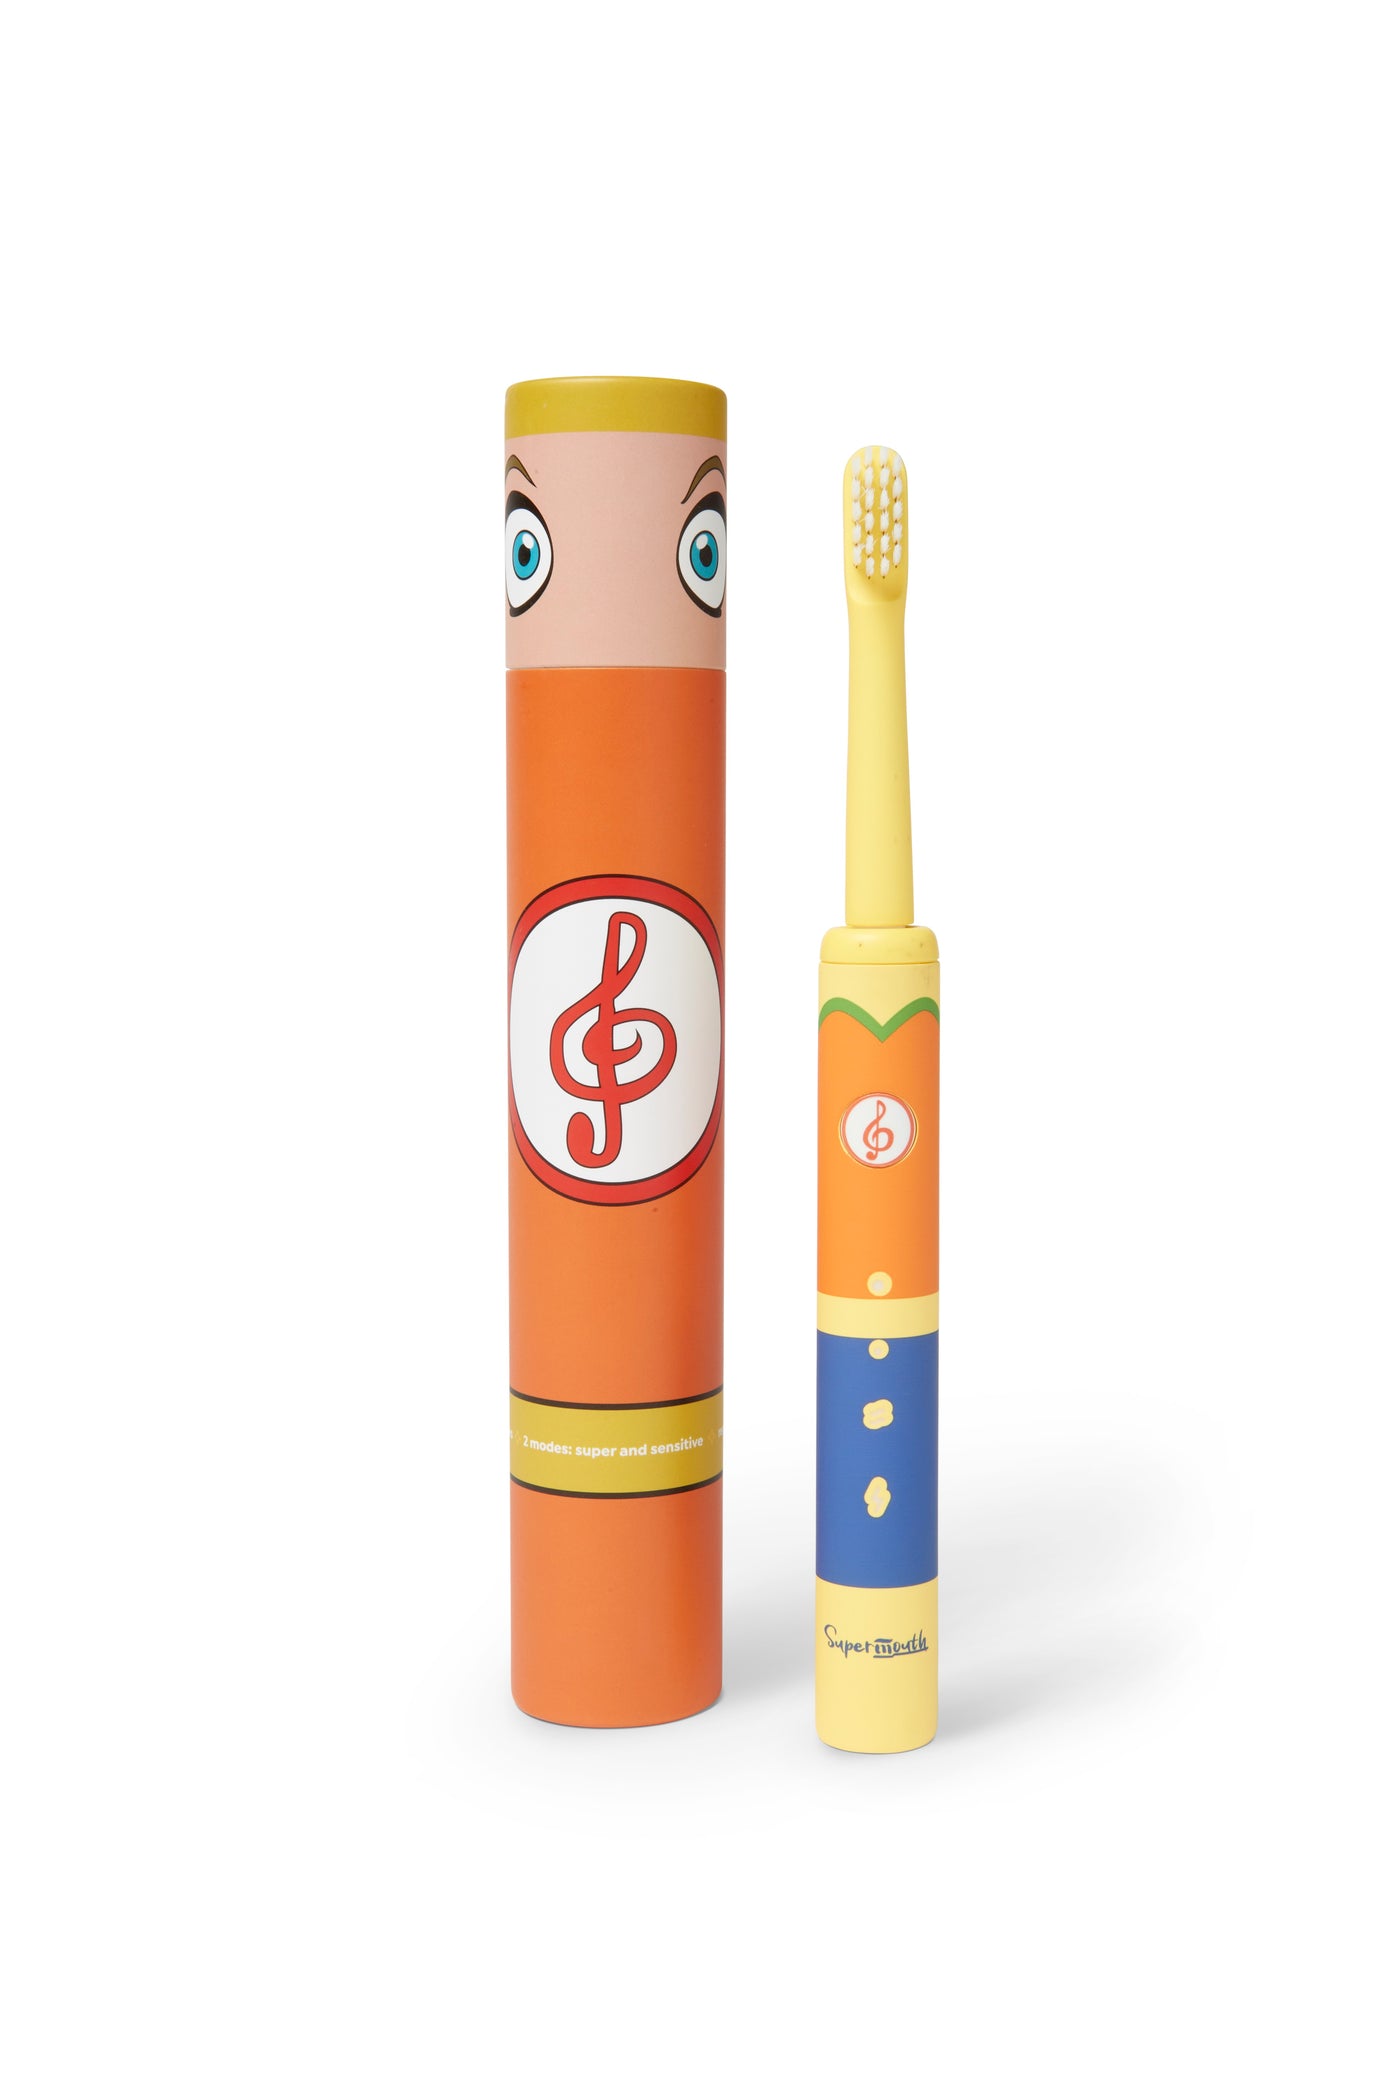 Smile Sidekick Sonic Mouthbrush - Kit Item